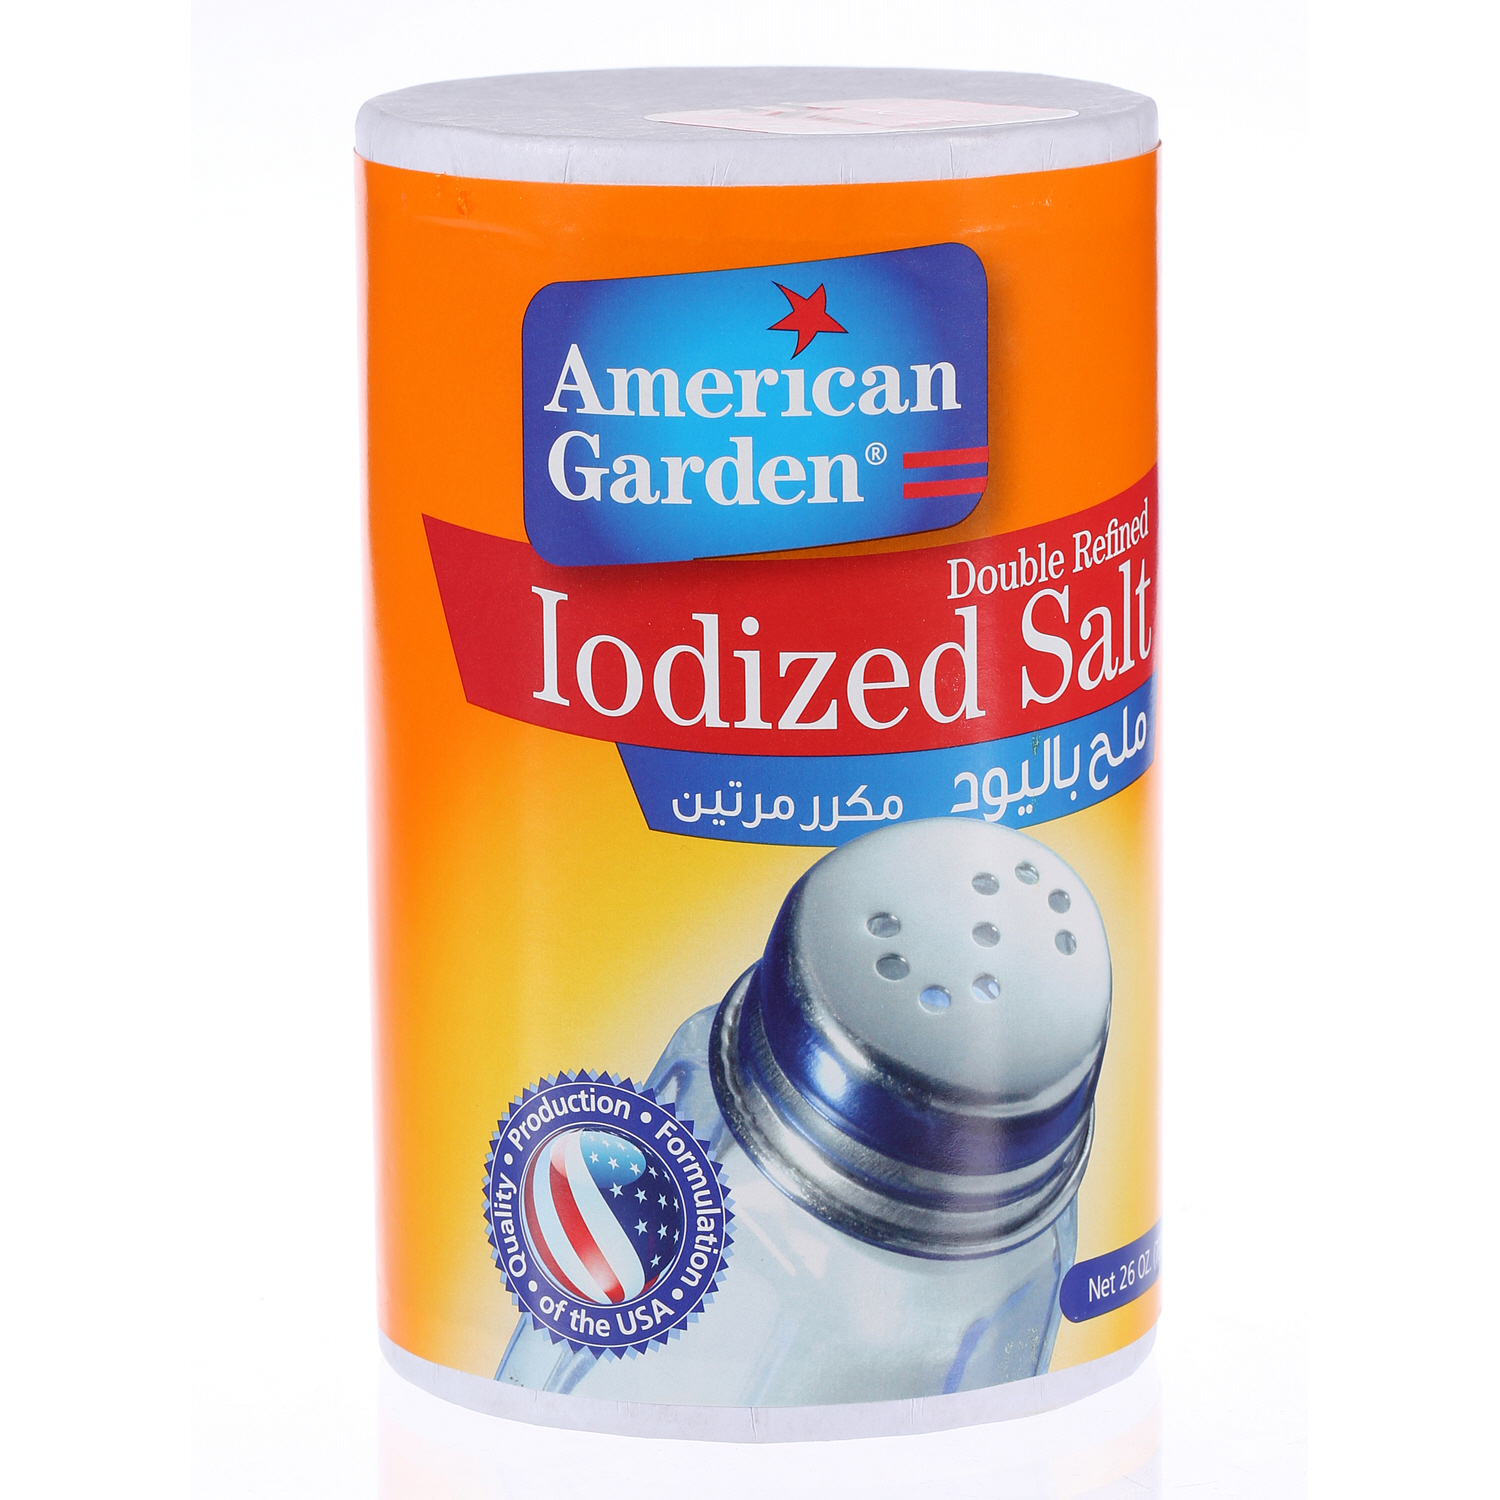 American Garden Iodized Salt 26 Oz